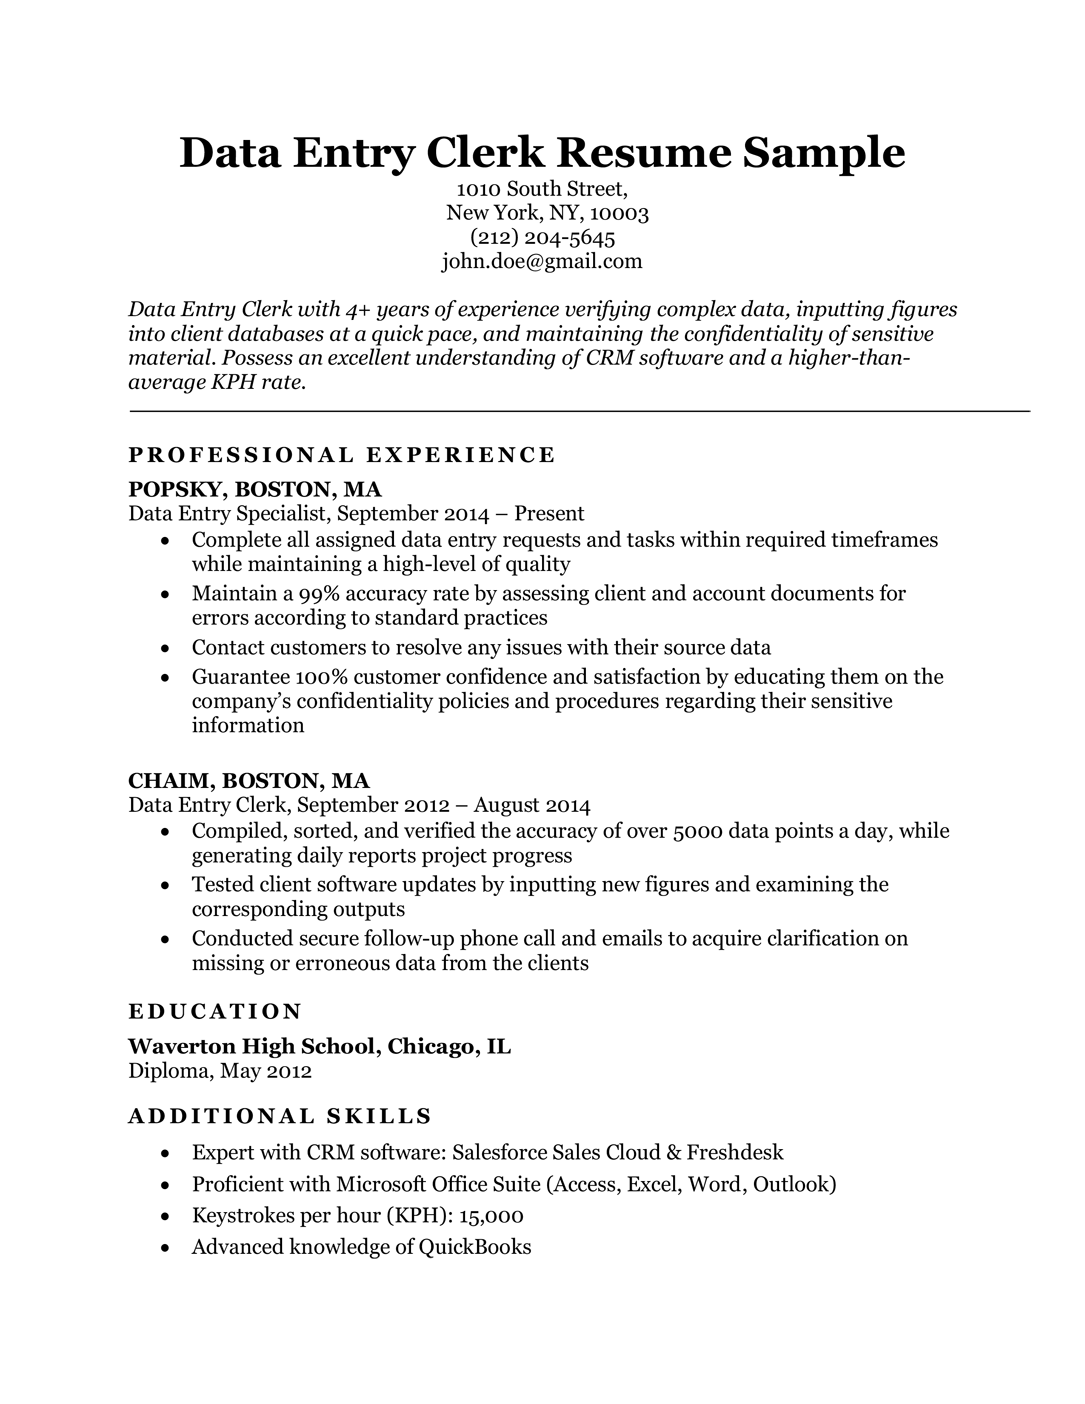 Data Entry Clerk Resume Sample Resume Companion